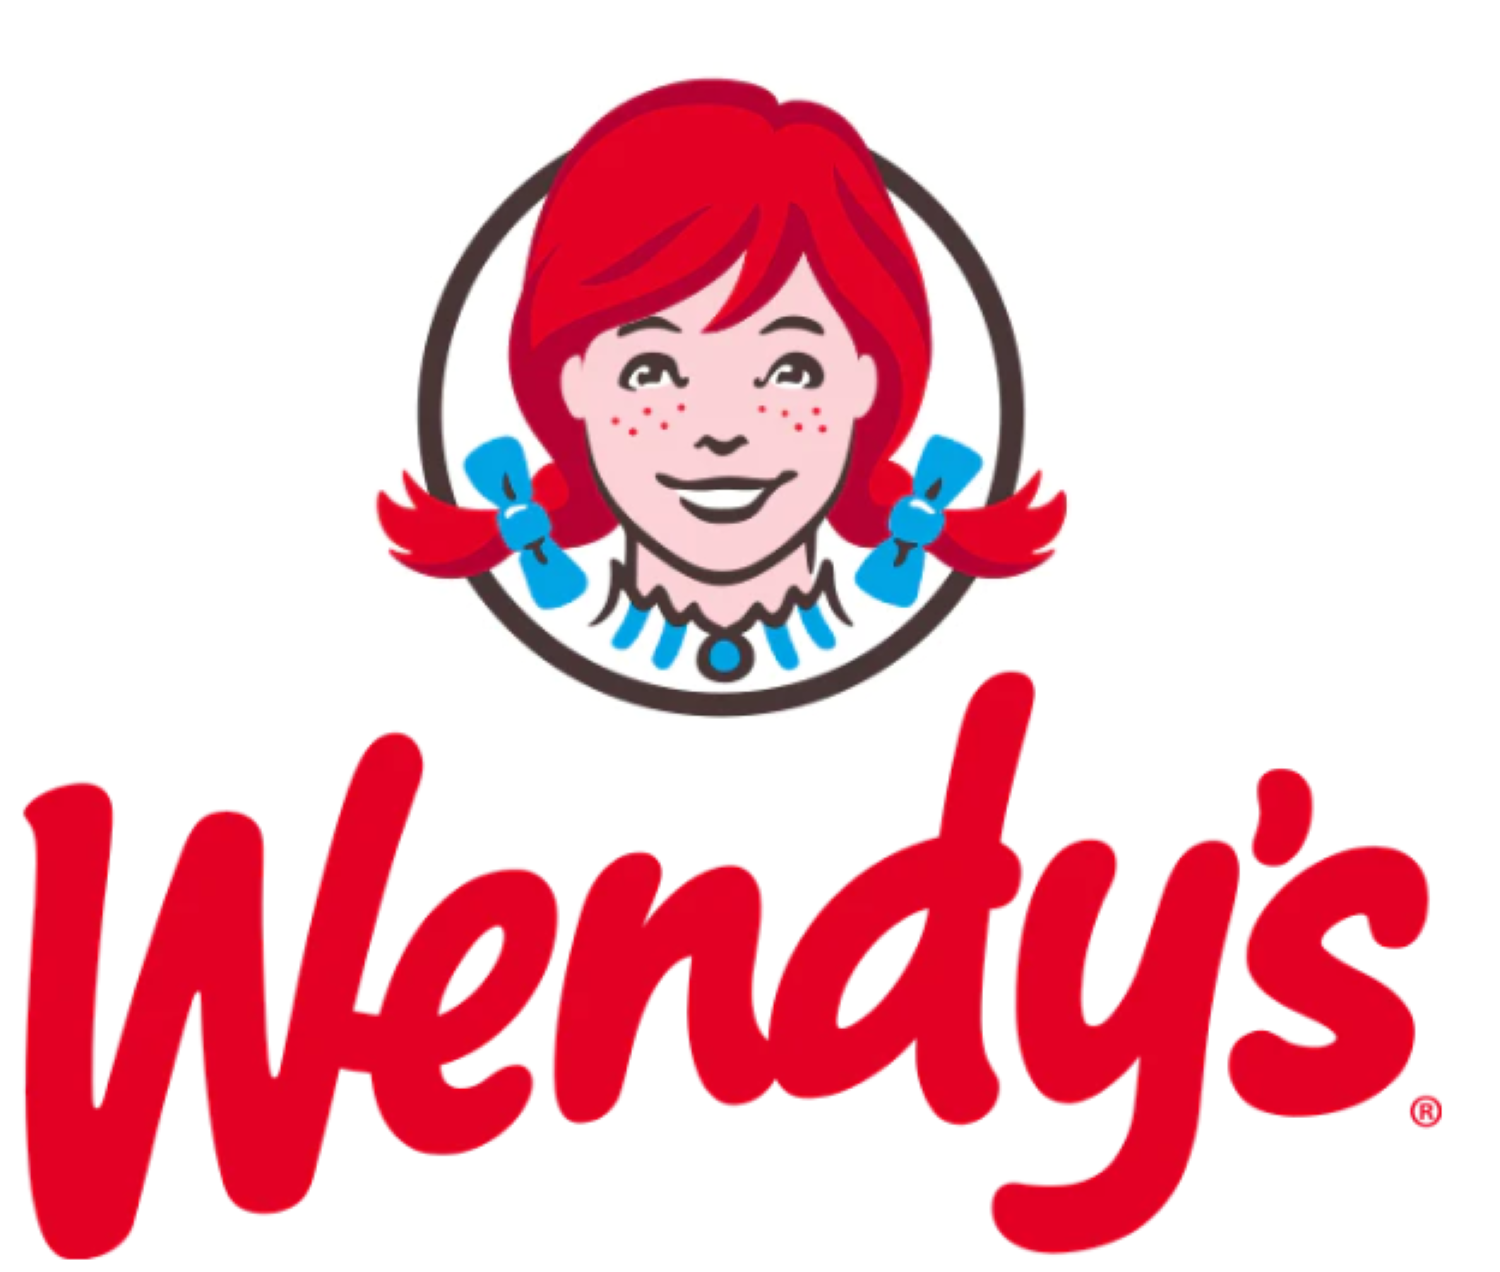 Zu sehen ist das Logo von Wendy's.